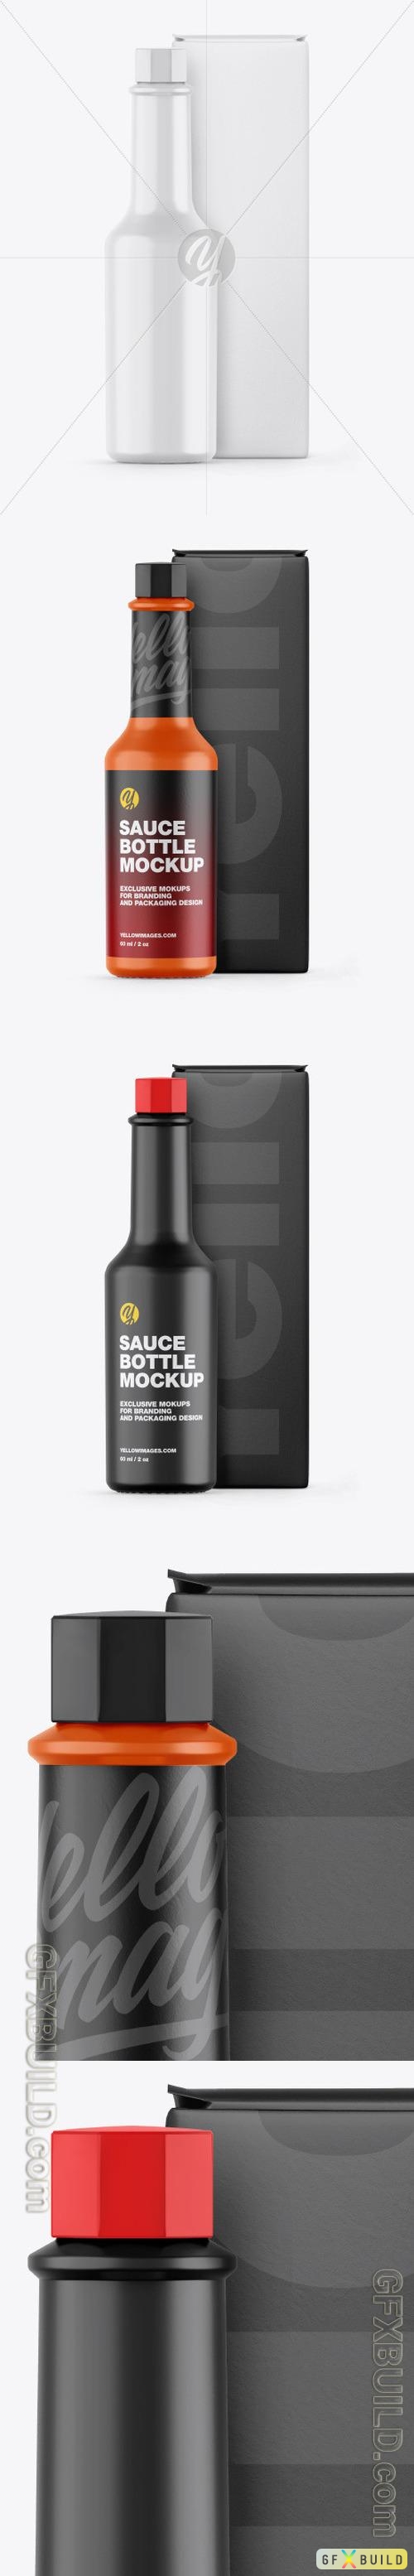 Glossy Sauce Bottle w/ Box Mockup 53460